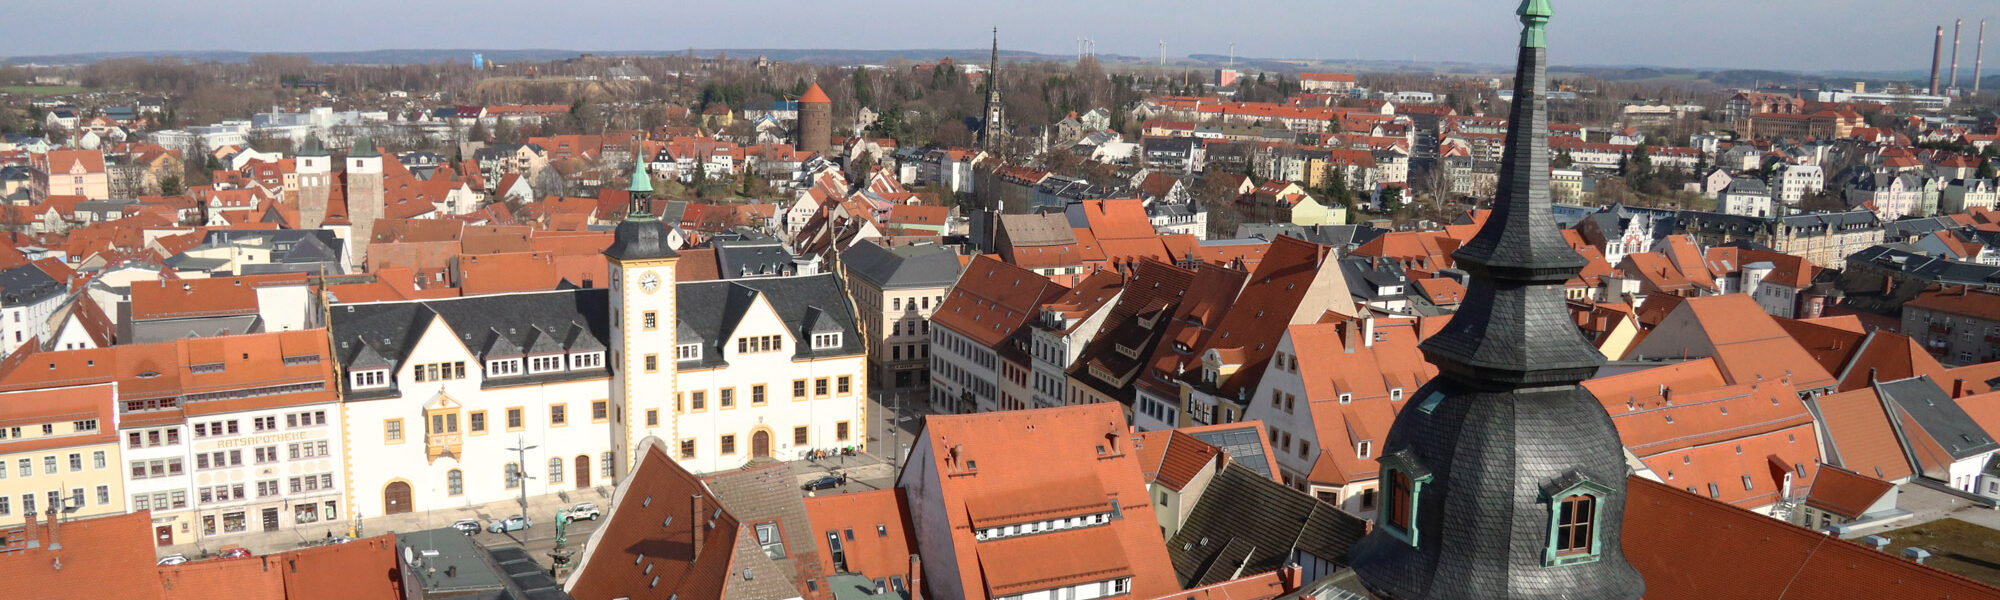 Freiberg, de zilverstad in Saksen - Panoramisch uitzicht vanaf de Petrikirche